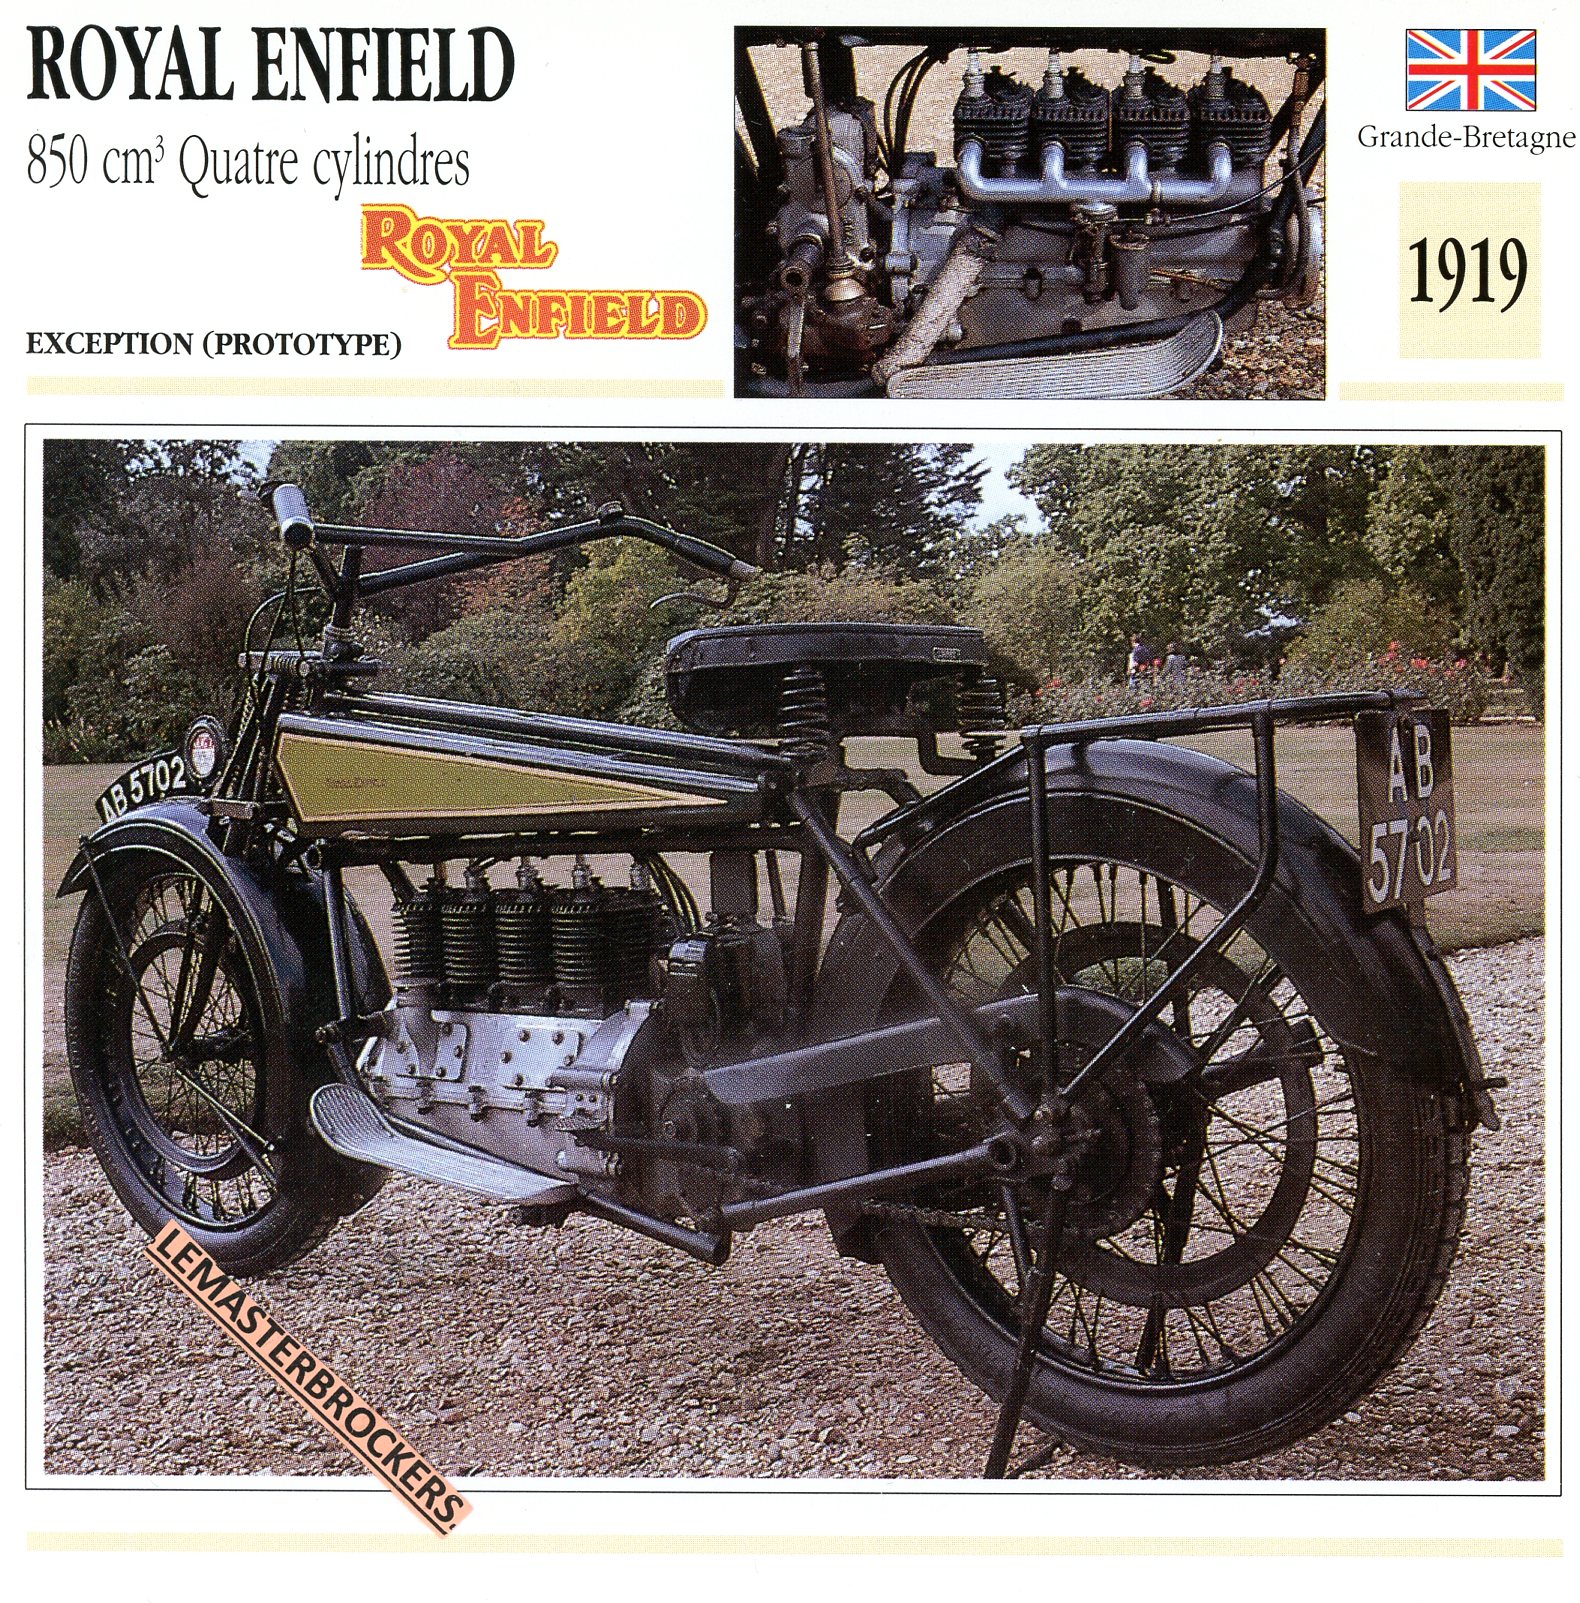 ROYAL ENFIELD 850 QUATRE CYLINDRES 1919 - FICHE MOTO